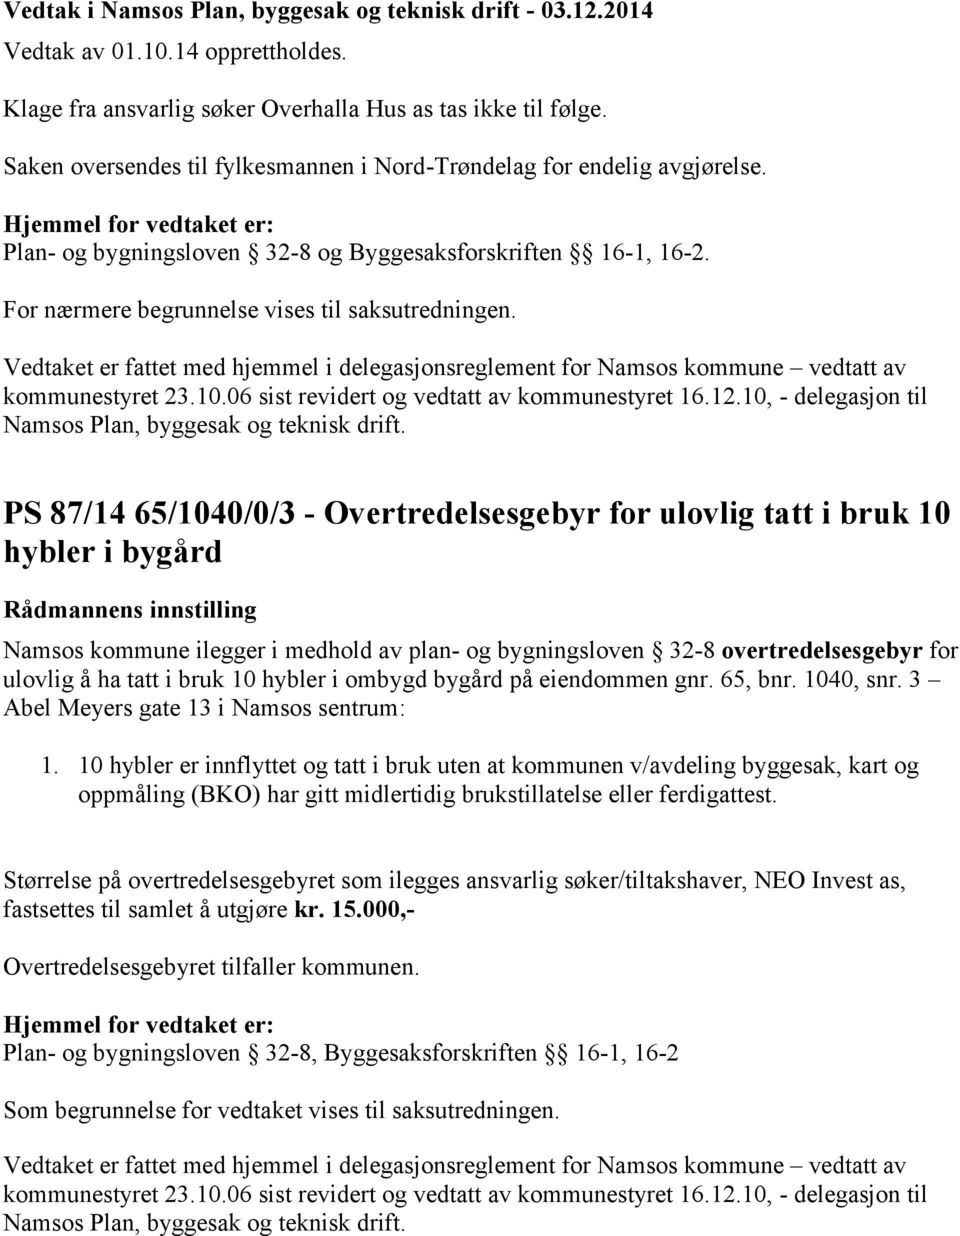 Vedtaket er fattet med hjemmel i delegasjonsreglement for Namsos kommune vedtatt av kommunestyret 23.10.06 sist revidert og vedtatt av kommunestyret 16.12.